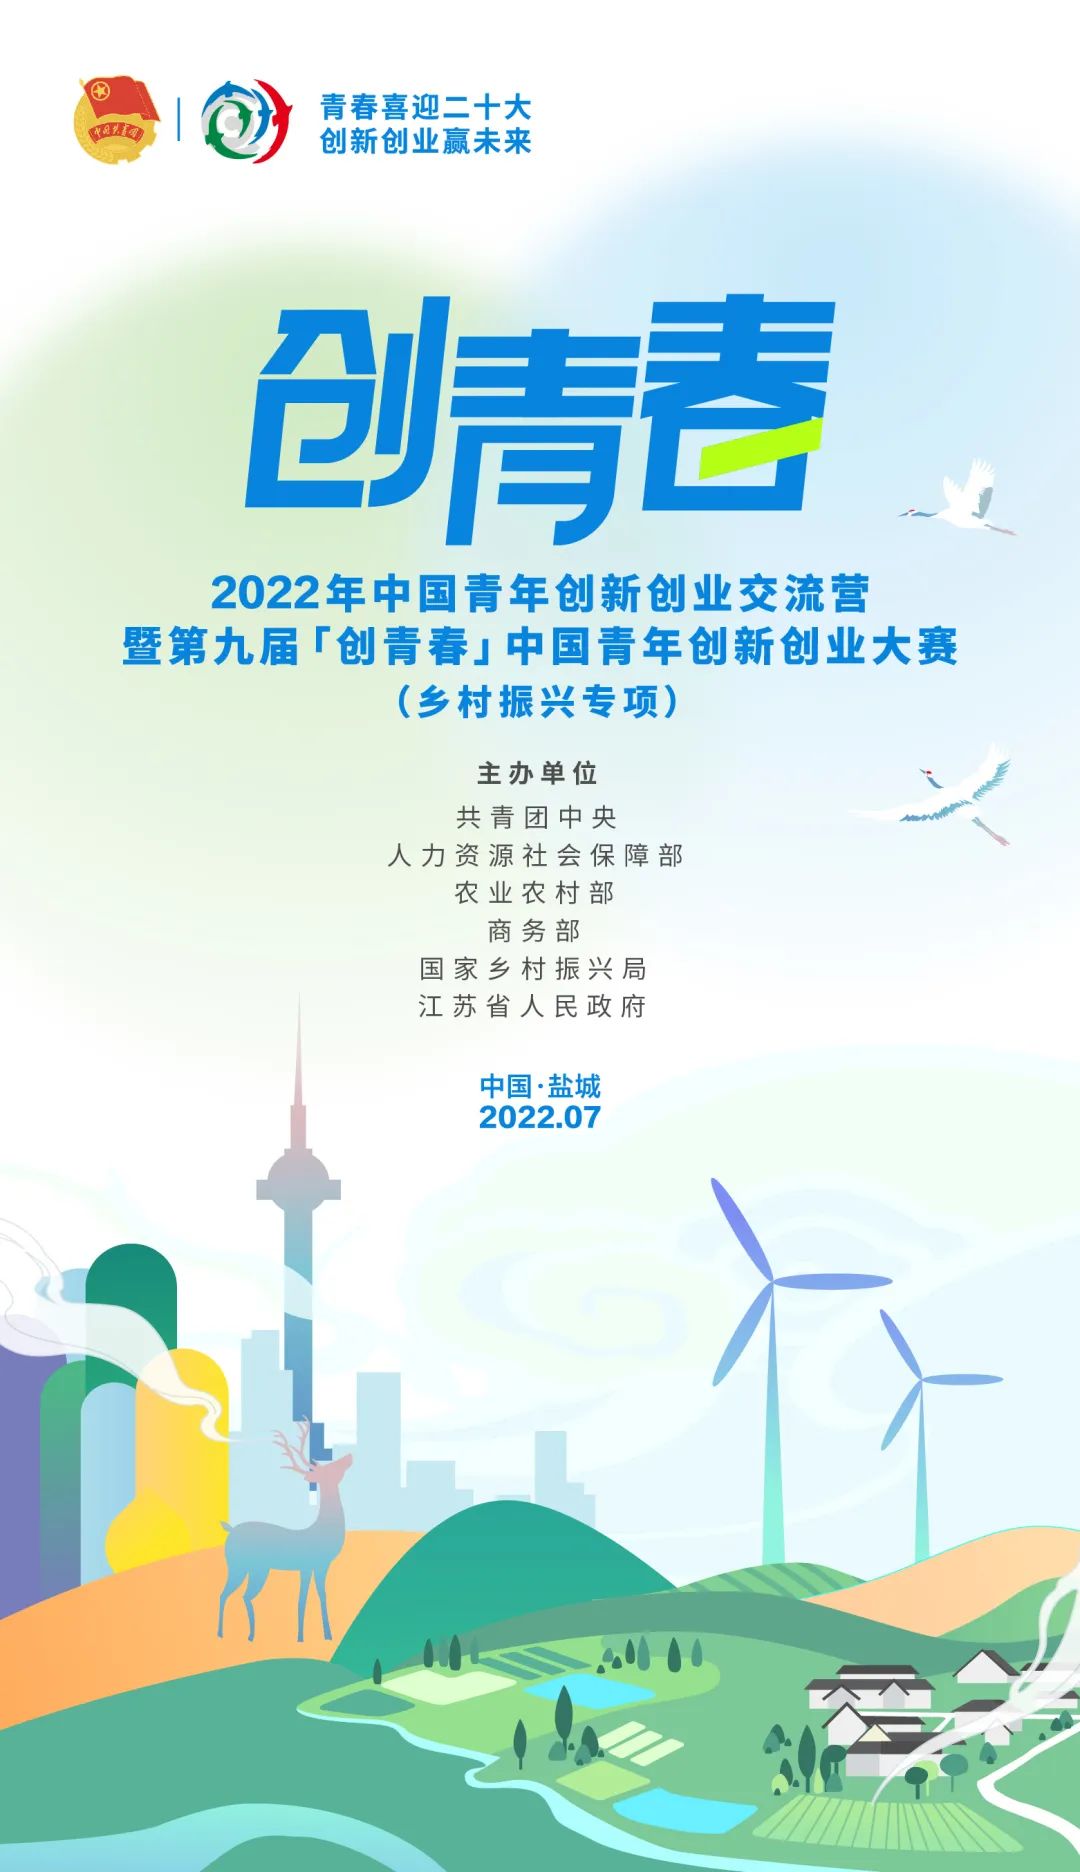 上海青创大赛鼓励两岸青年 创业改变未来